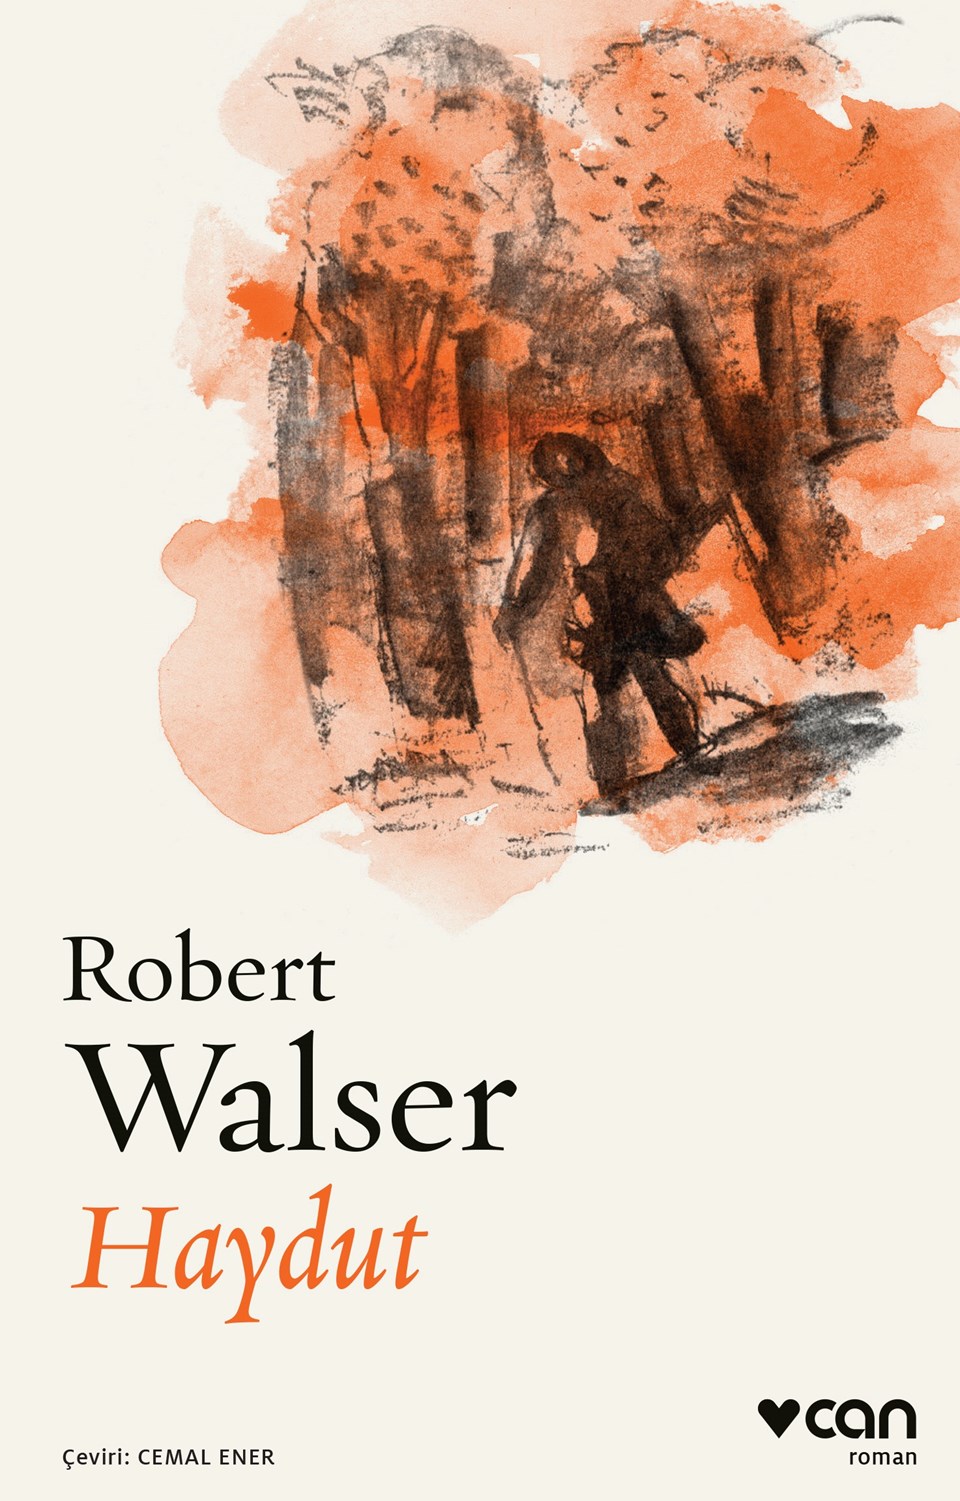 Robert Walser’den“Haydut” - 1